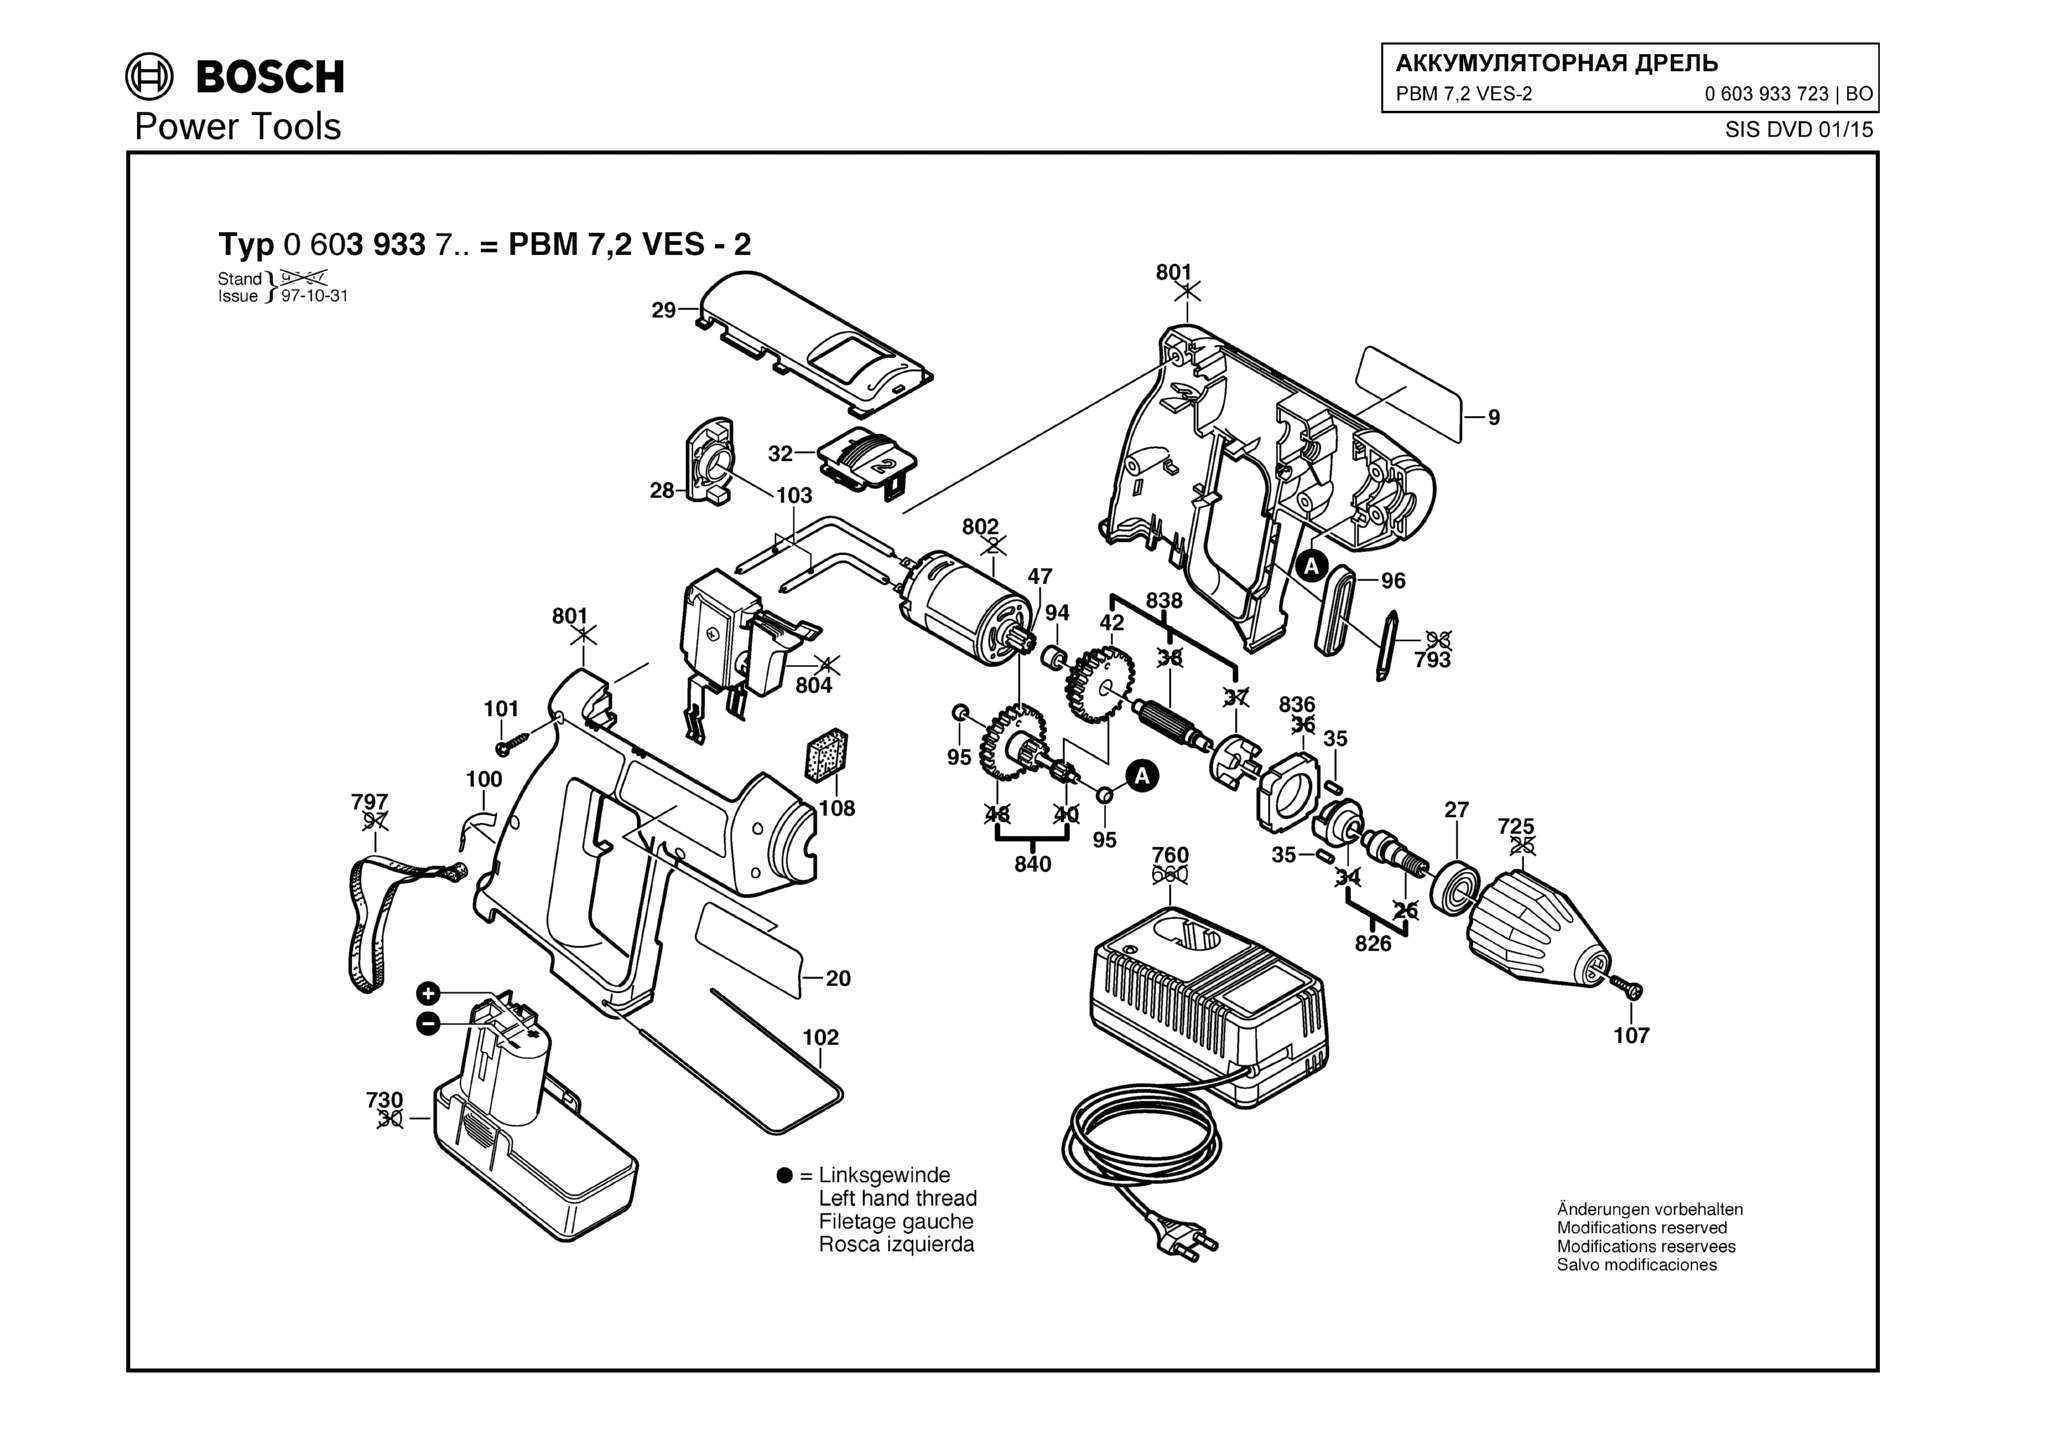 Запчасти, схема и деталировка Bosch PBM 7,2 VES-2 (ТИП 0603933723)